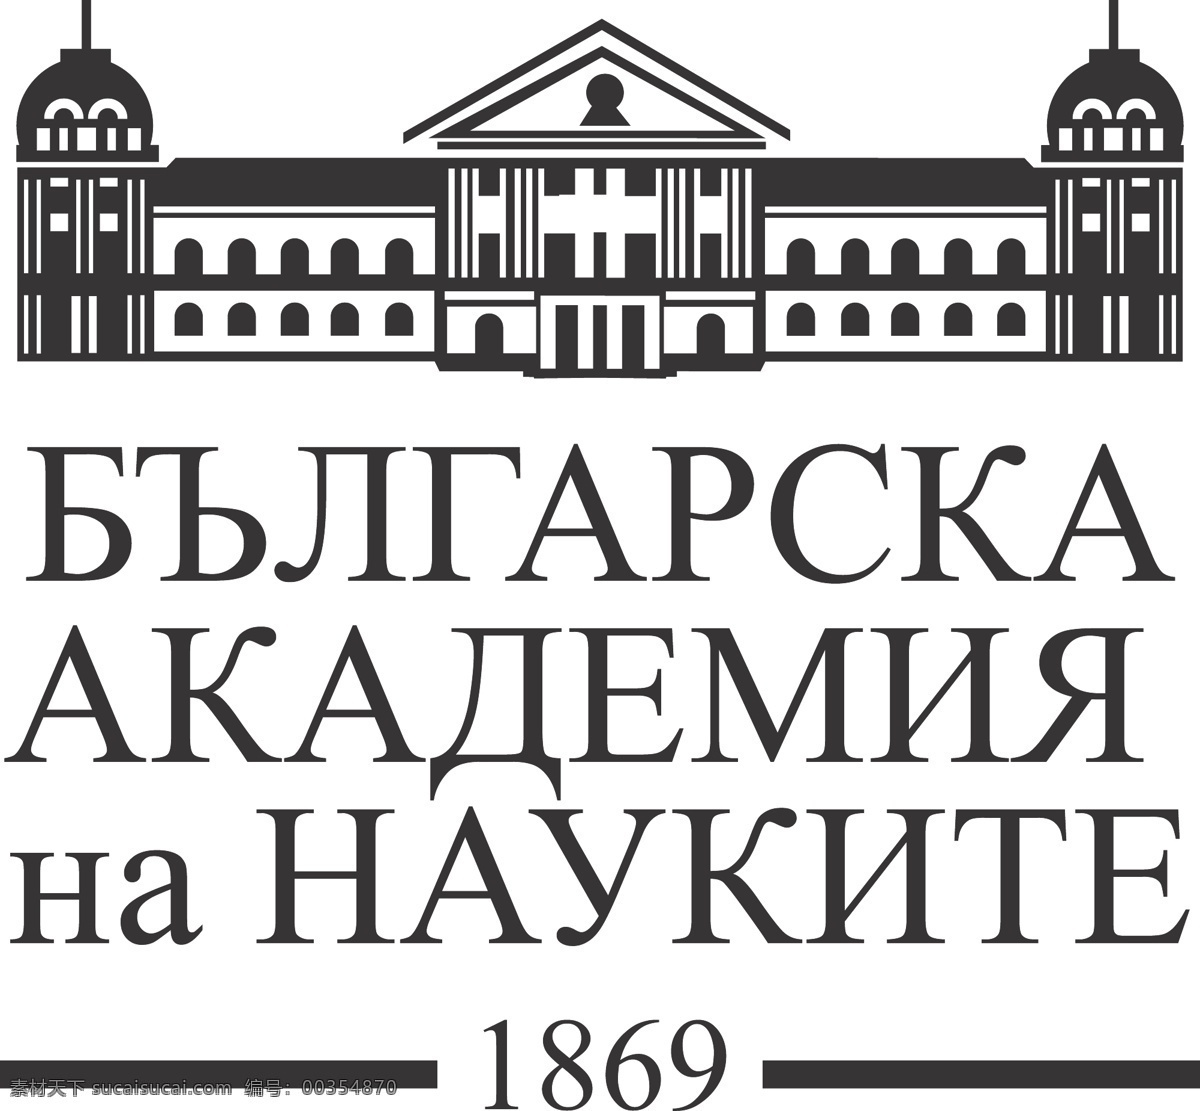 保加利亚 科学院 矢量标志下载 免费矢量标识 商标 品牌标识 标识 矢量 免费 品牌 公司 白色